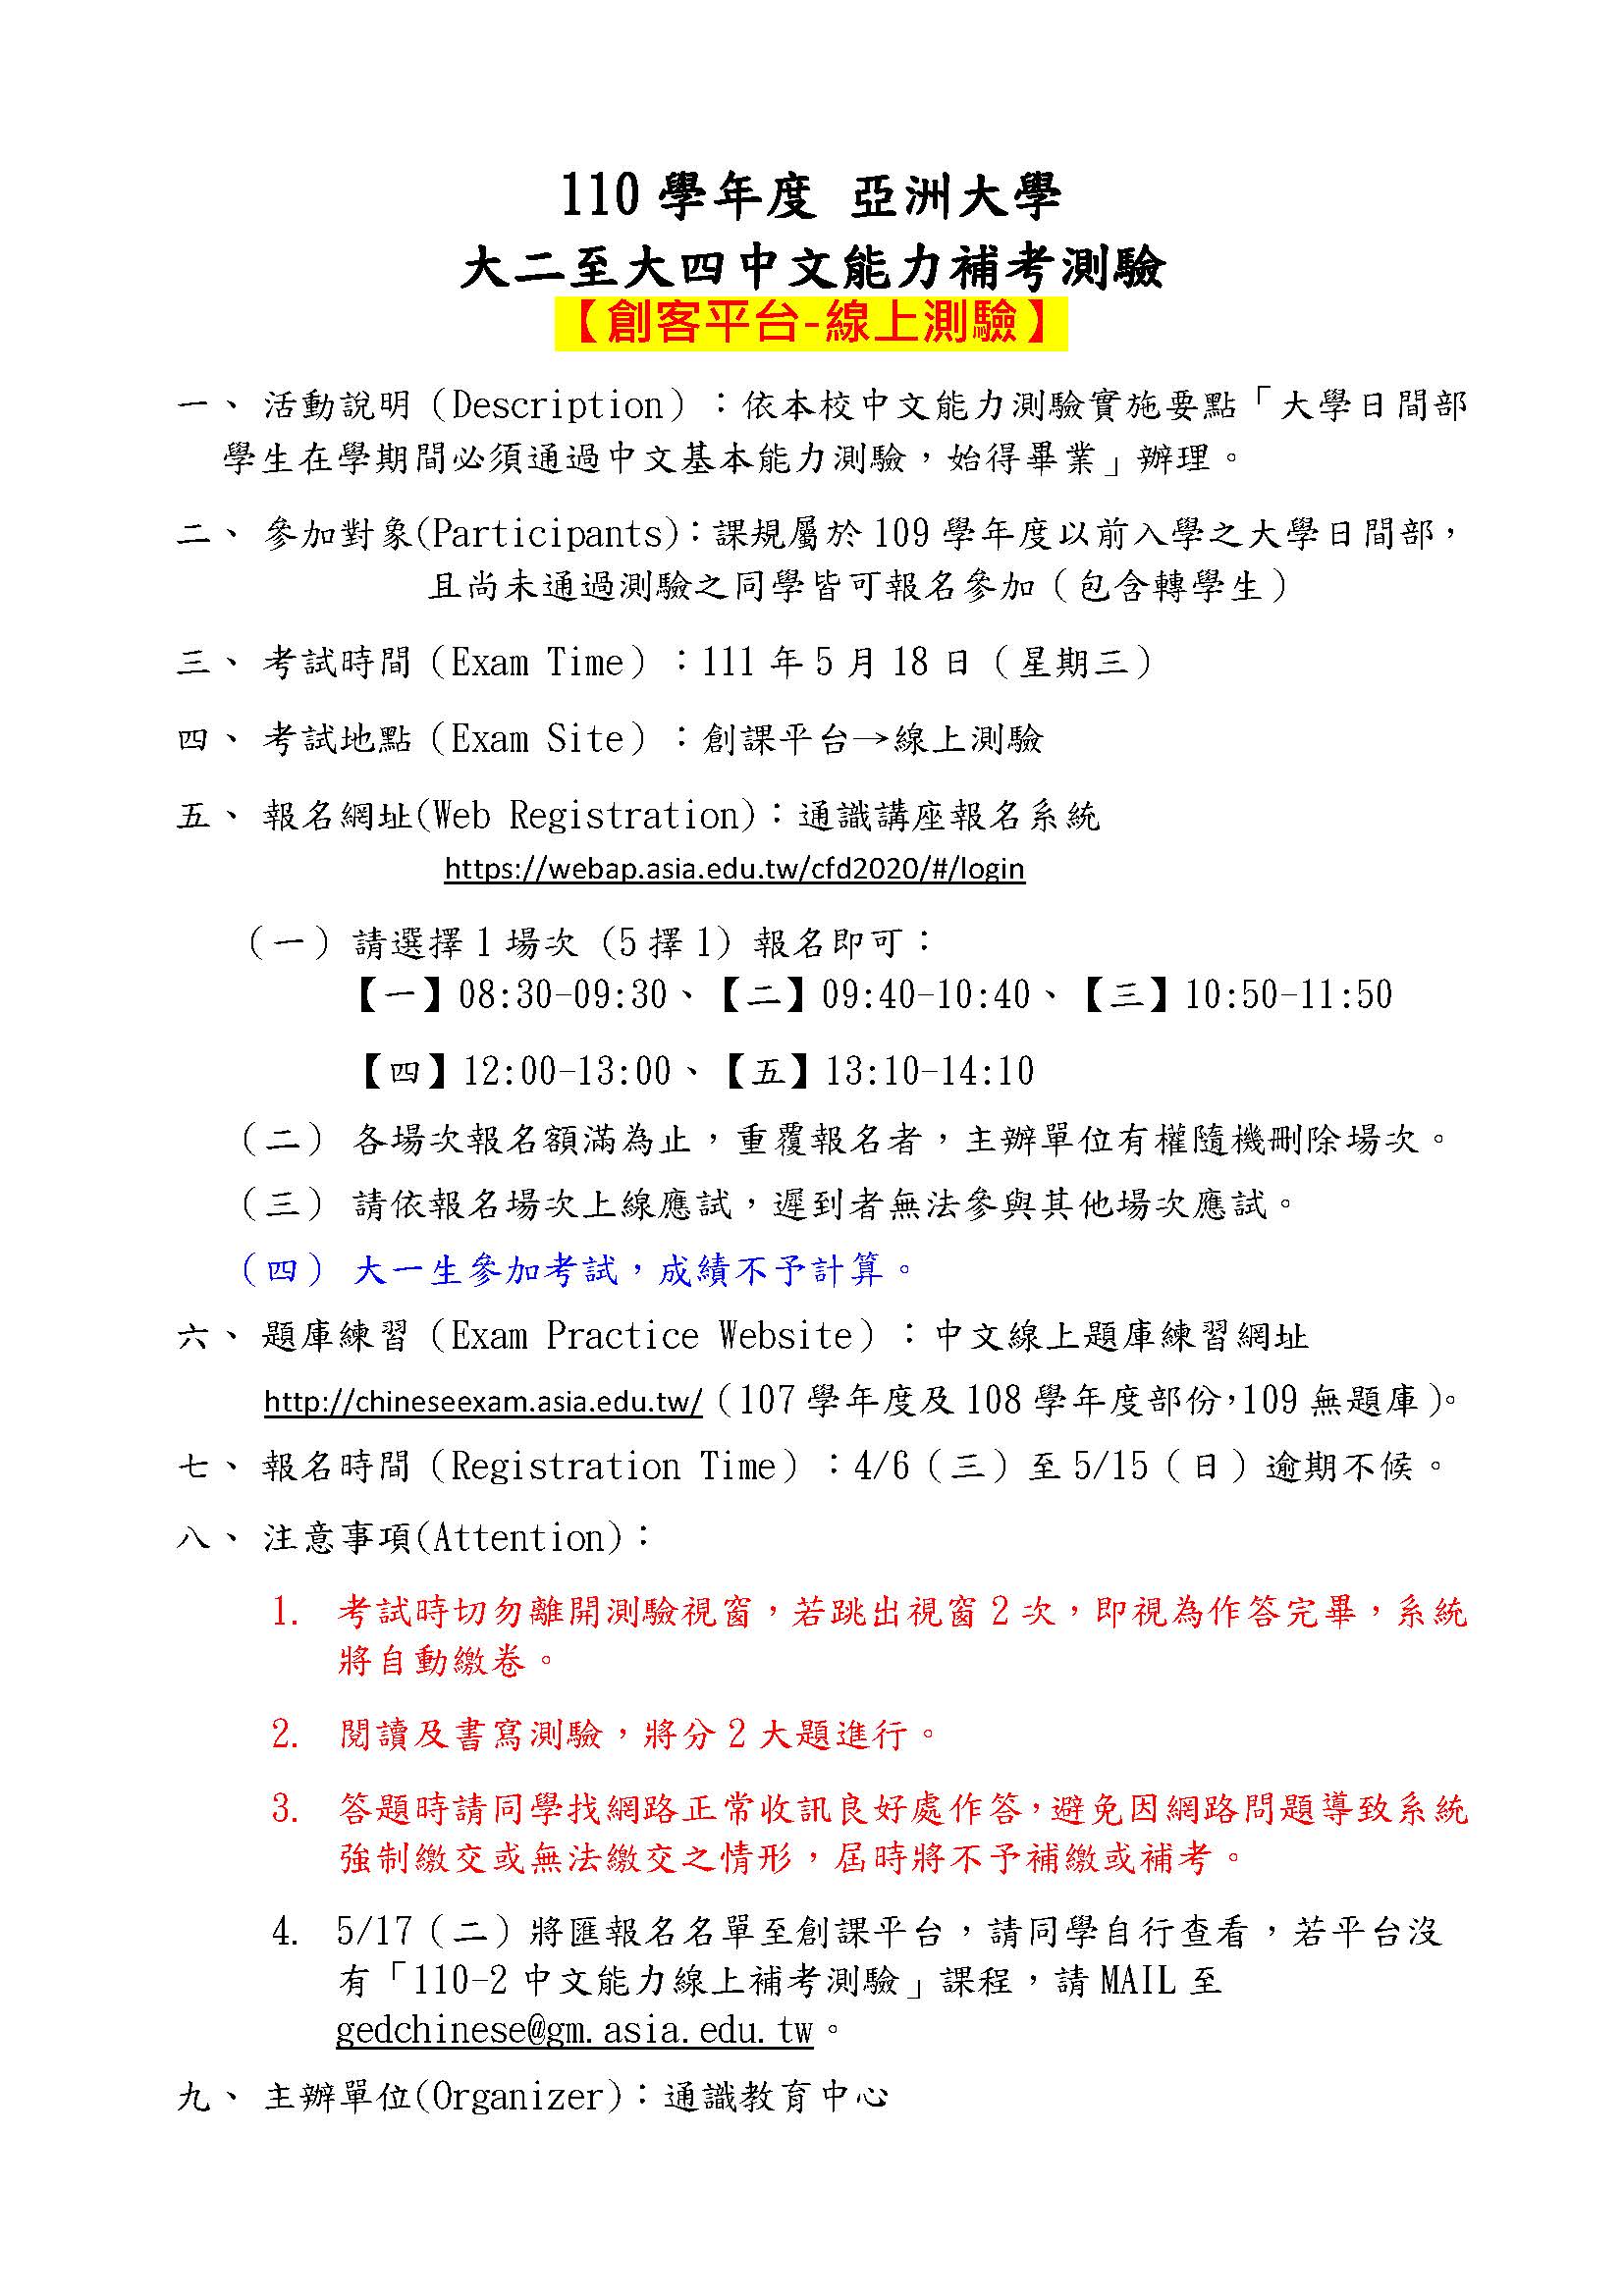 大二-大四中文能力测验计画书公告